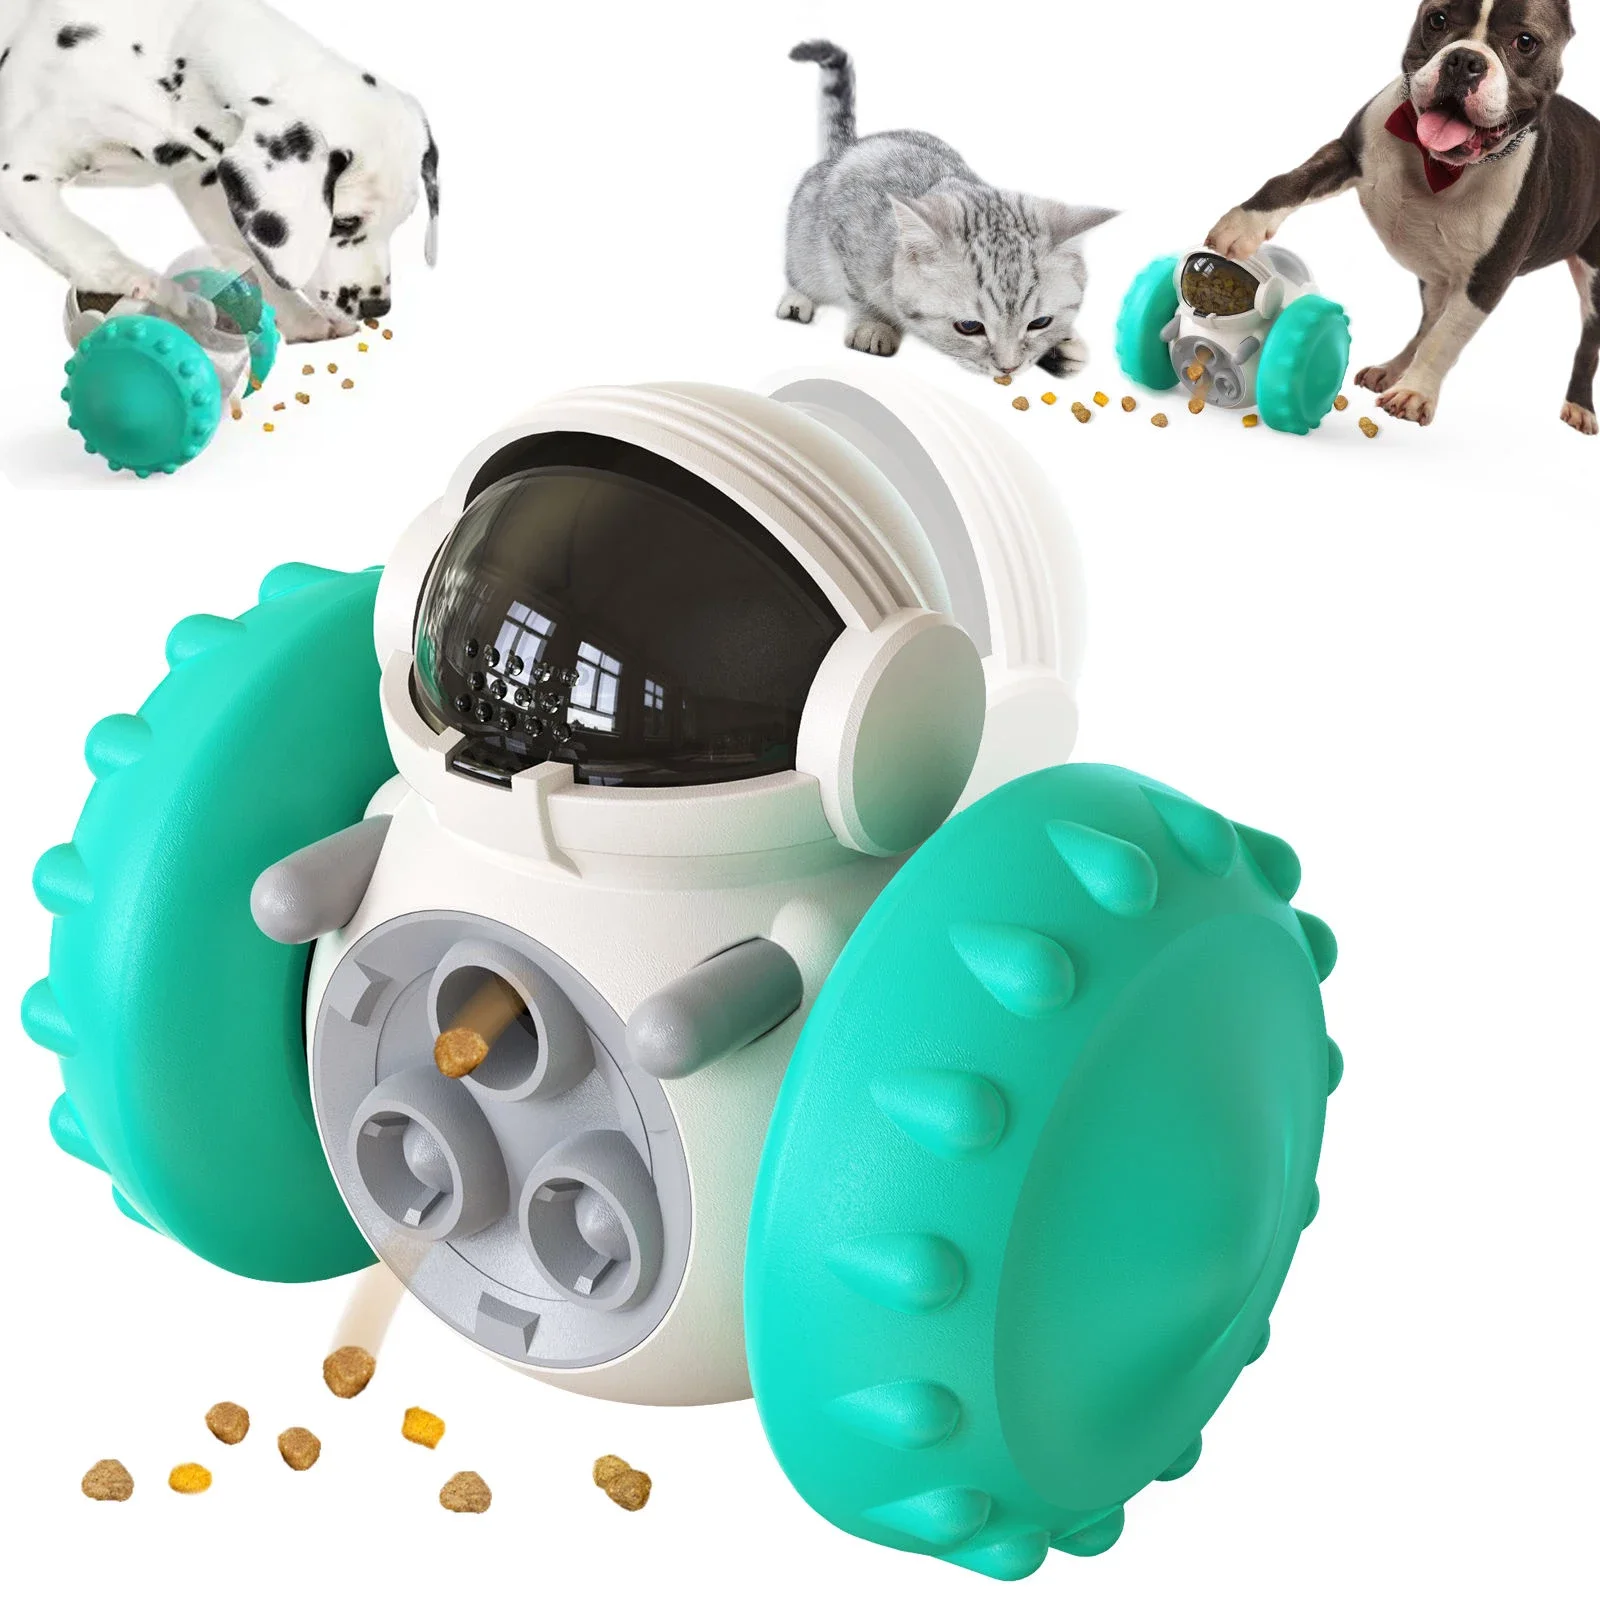 

Игрушки для собак, робот, собака, кошка, диспенсер для еды, стакан, игрушки-головоломки для домашних животных, медленная кормушка для собак, устройство для упражнений, устройство для кормления, товары для обучения